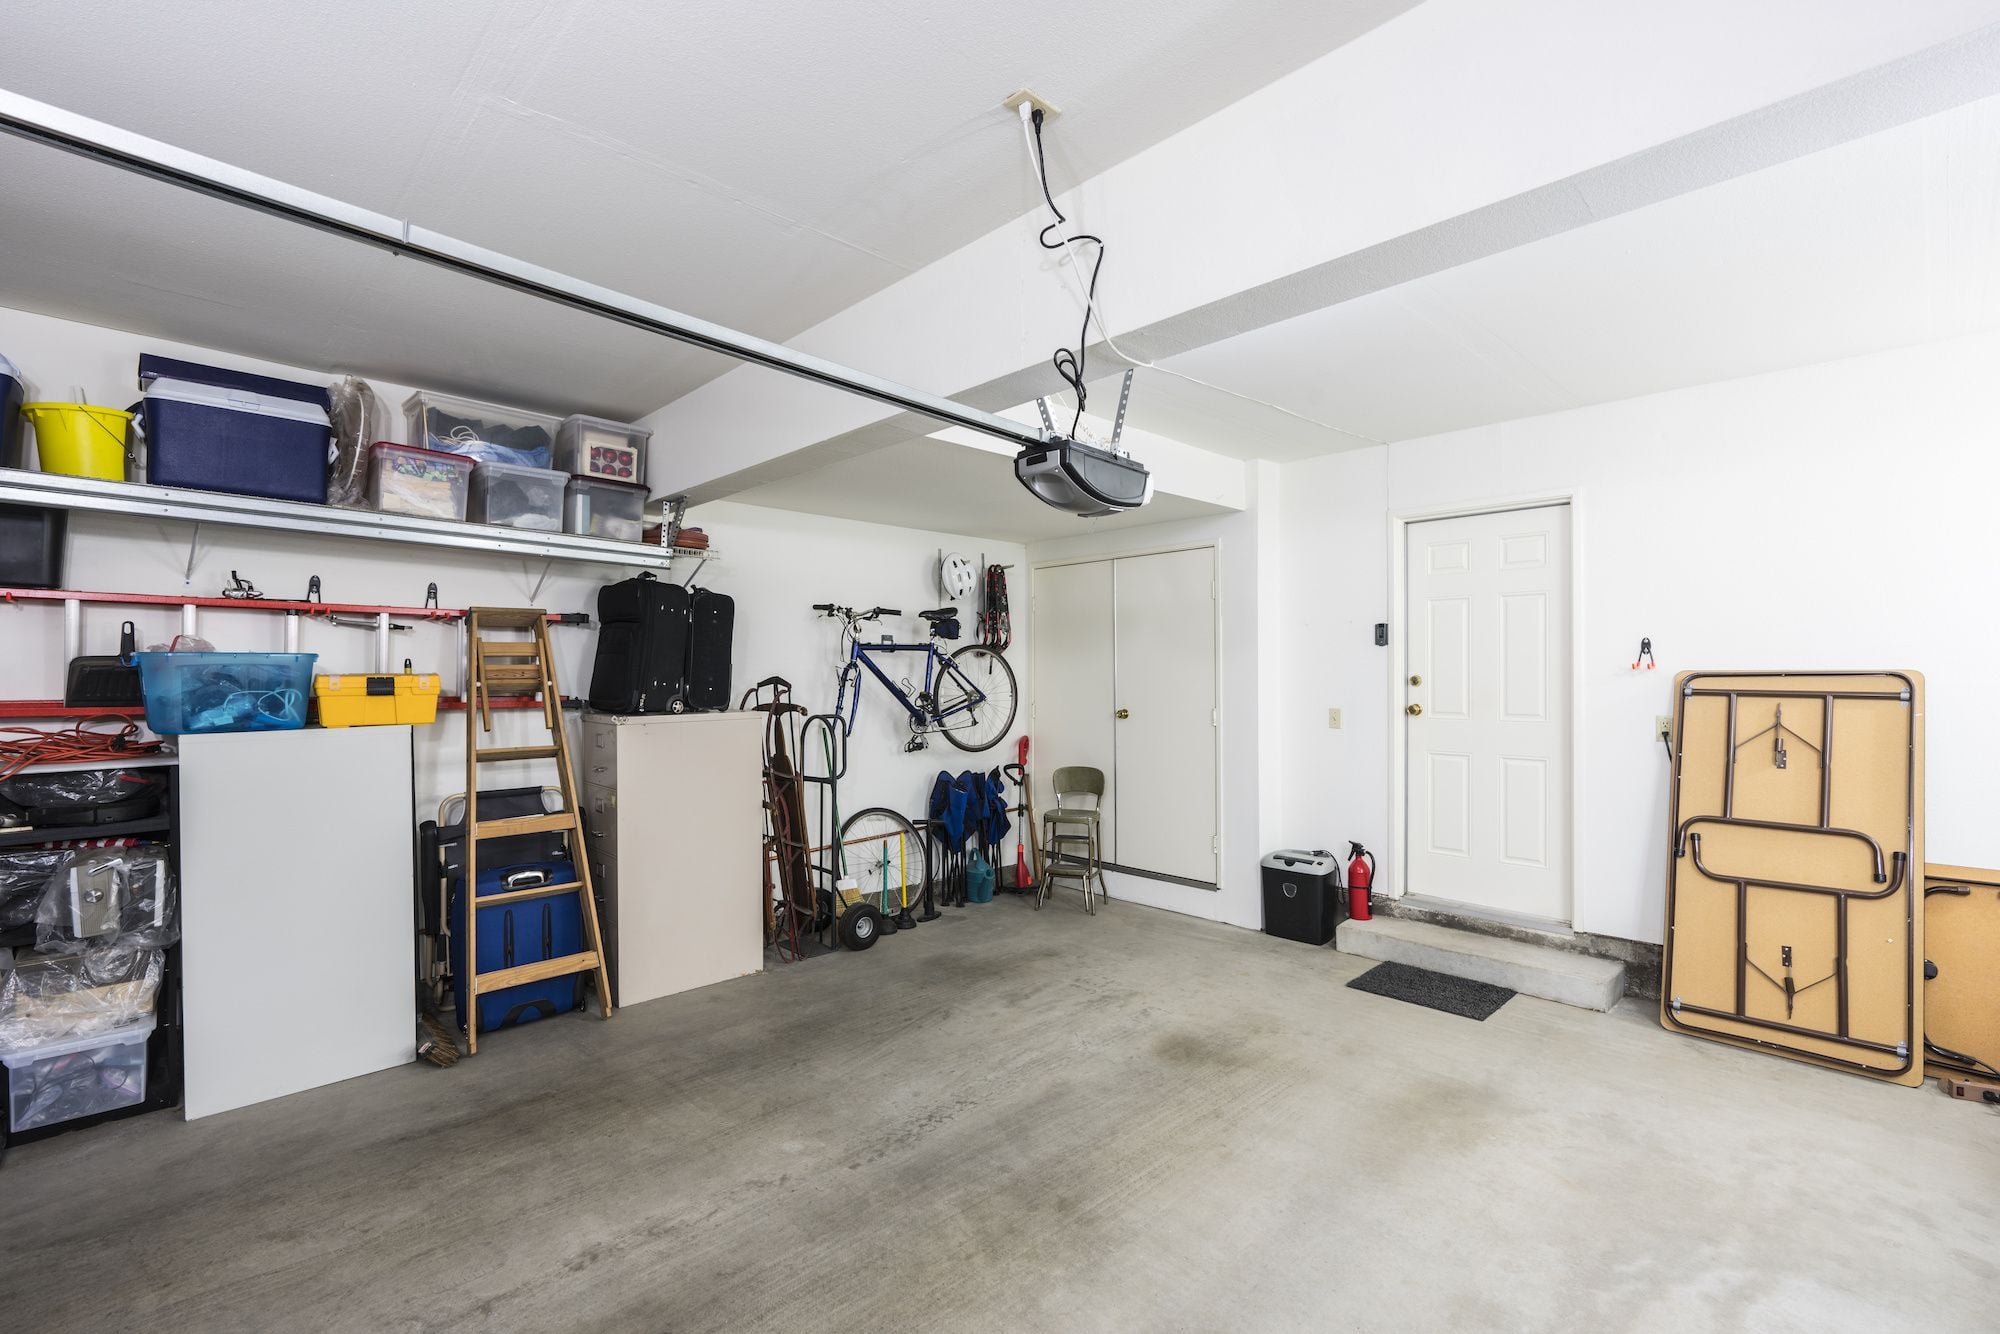 Organized garage space